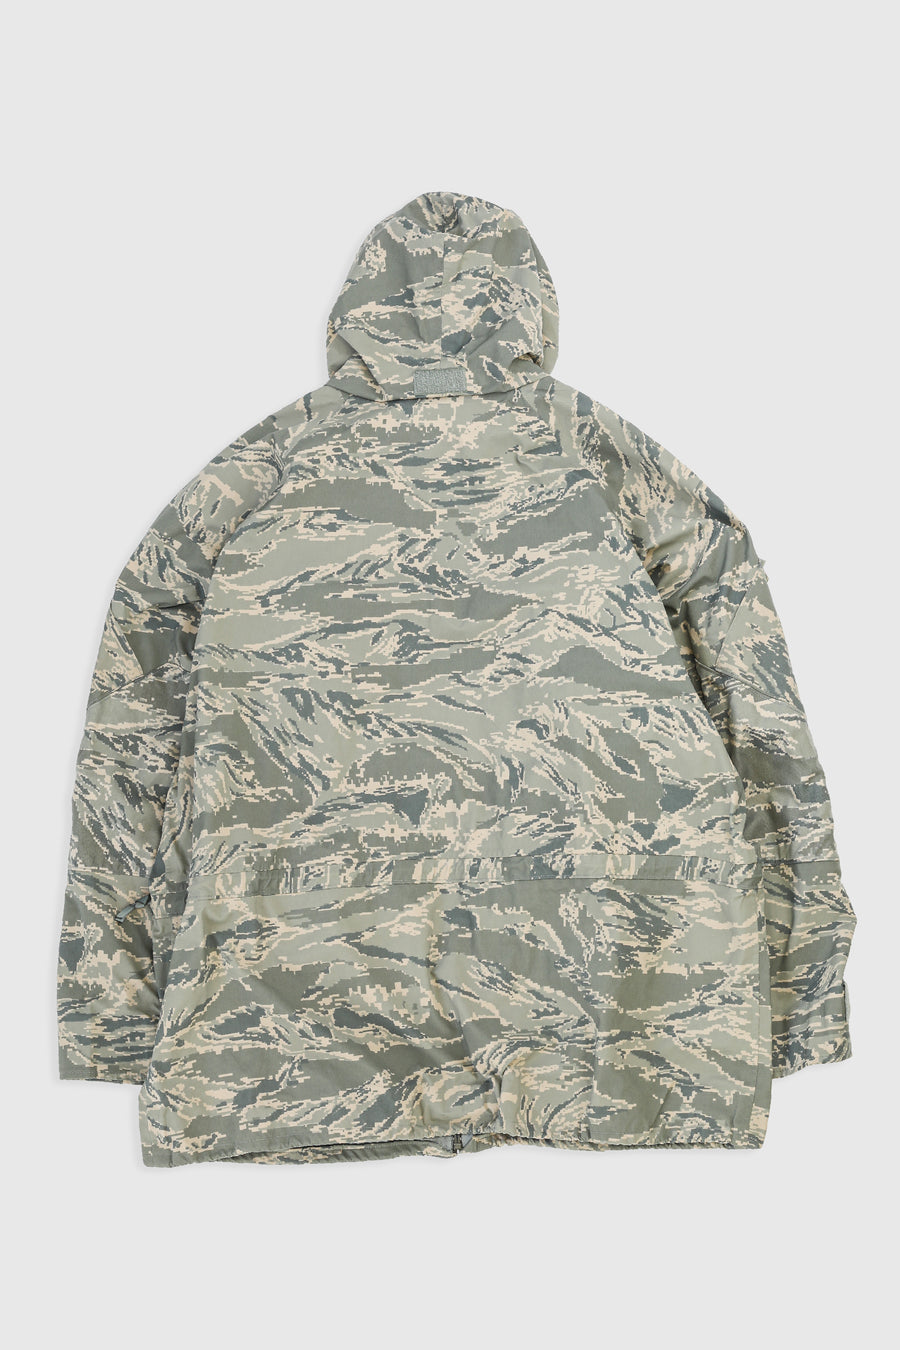 Vintage Military Rain Jacket - XL